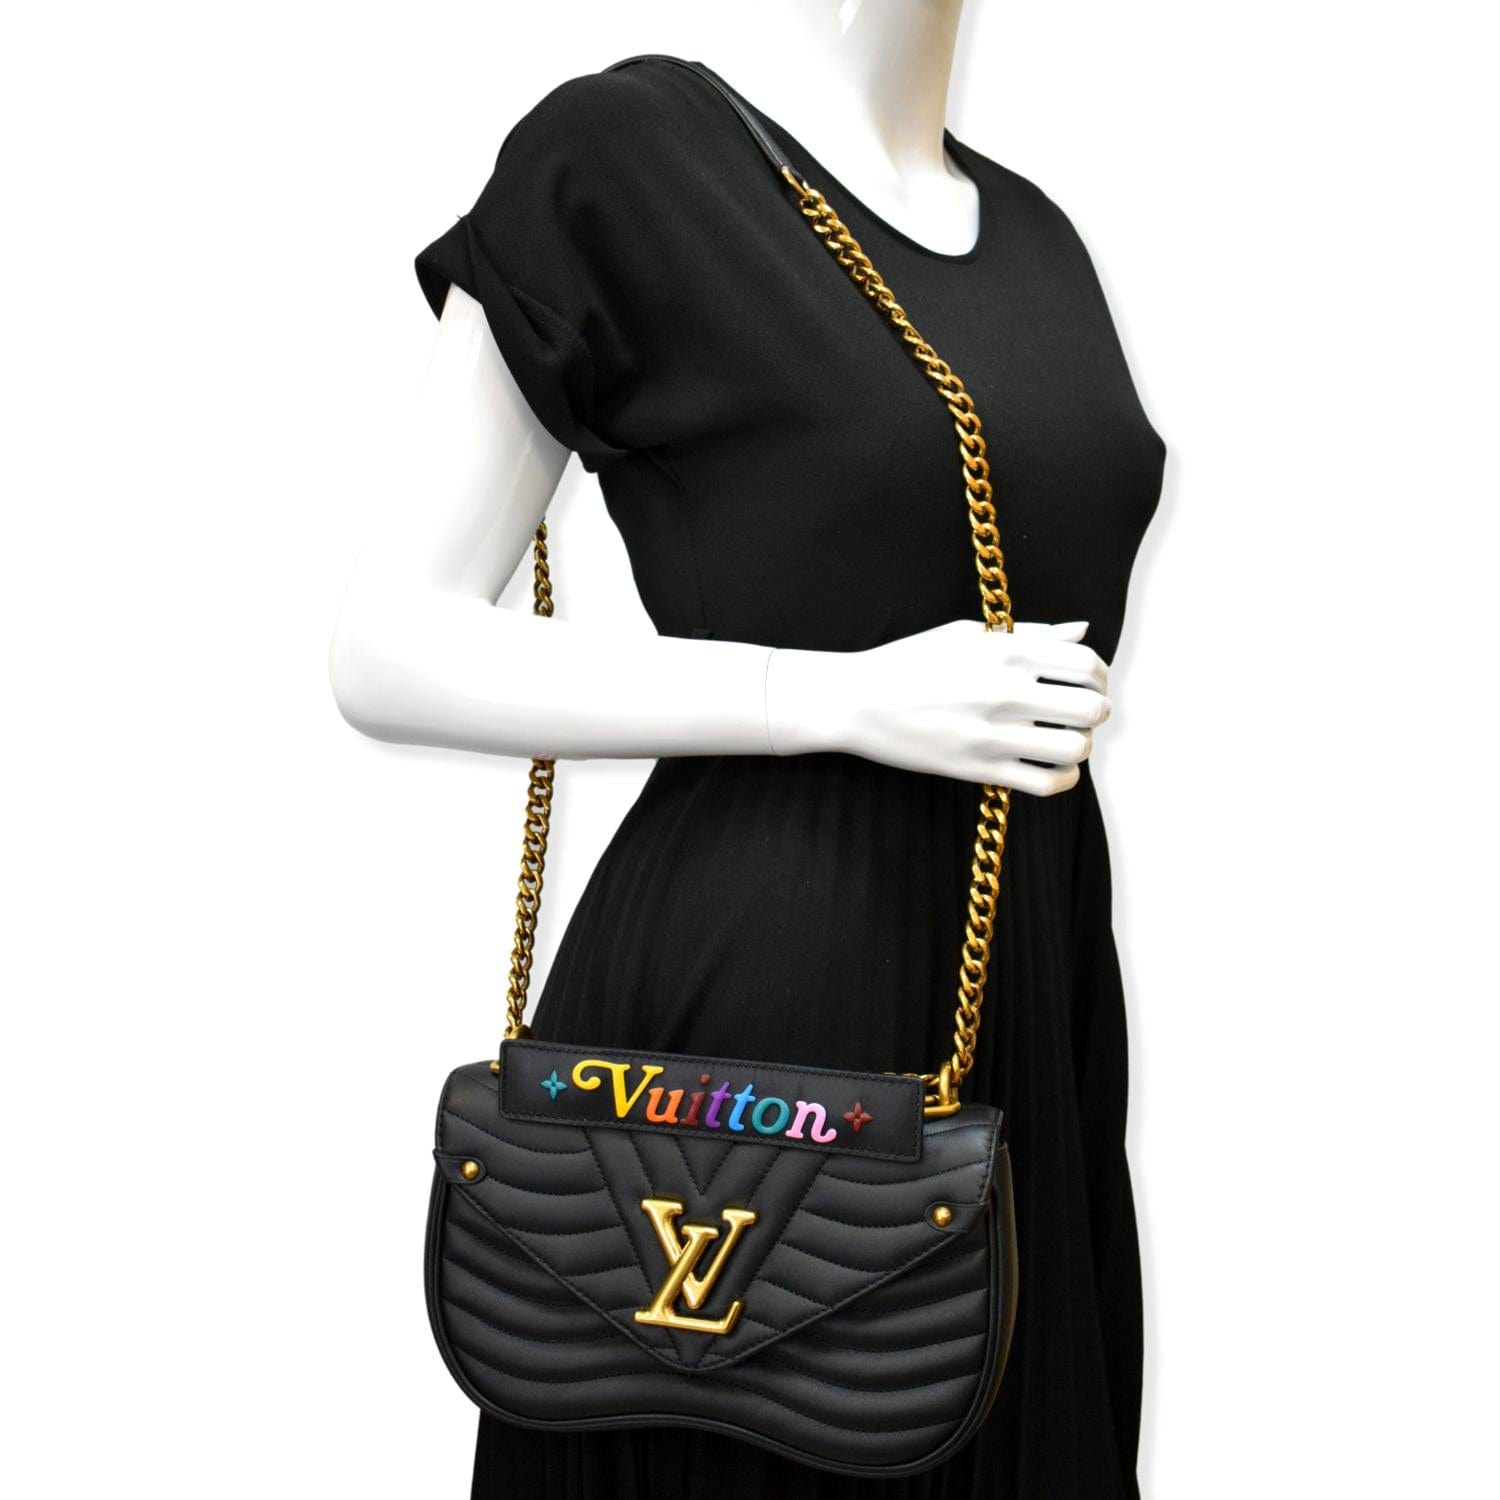 LOUIS VUITTON Authentic Women's New Wave Camera Bag Shoulder Bag Logo  Black